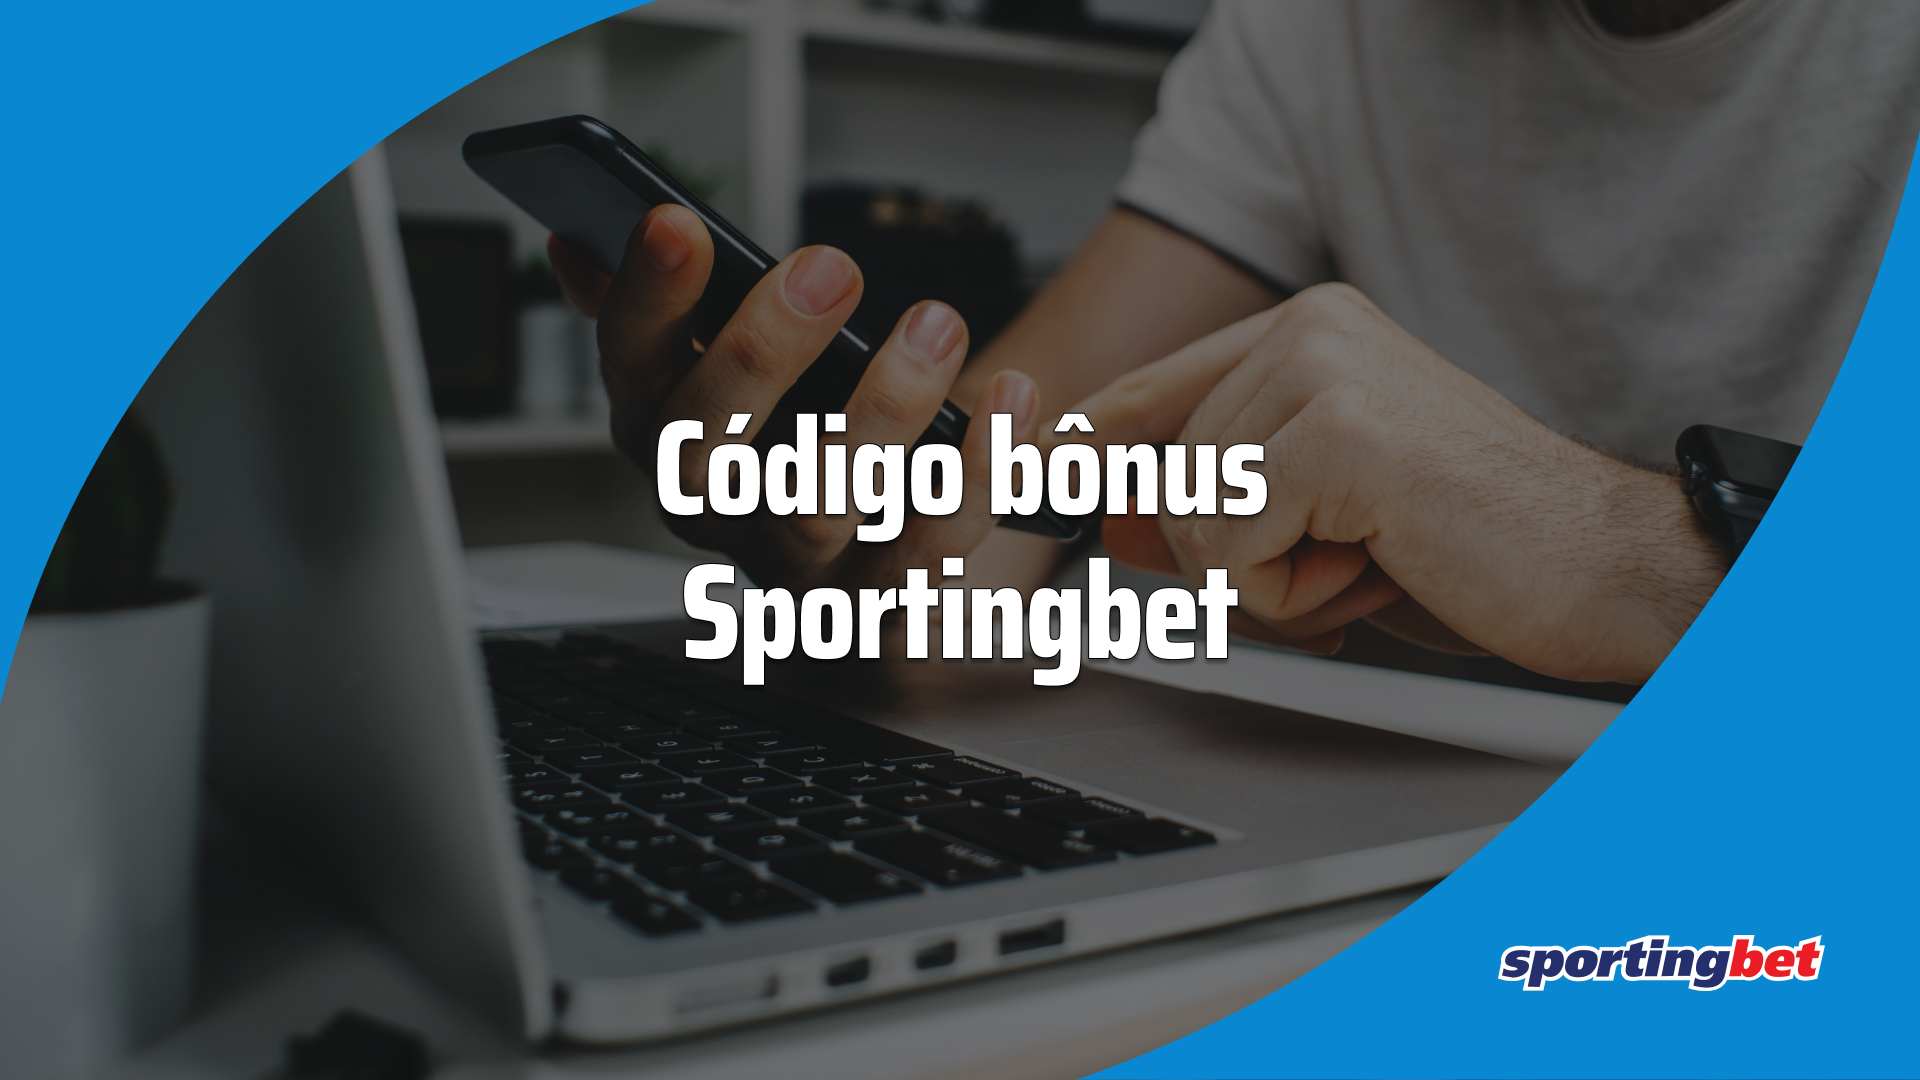 Cdigo bnus Sportingbet: como obter at R$750